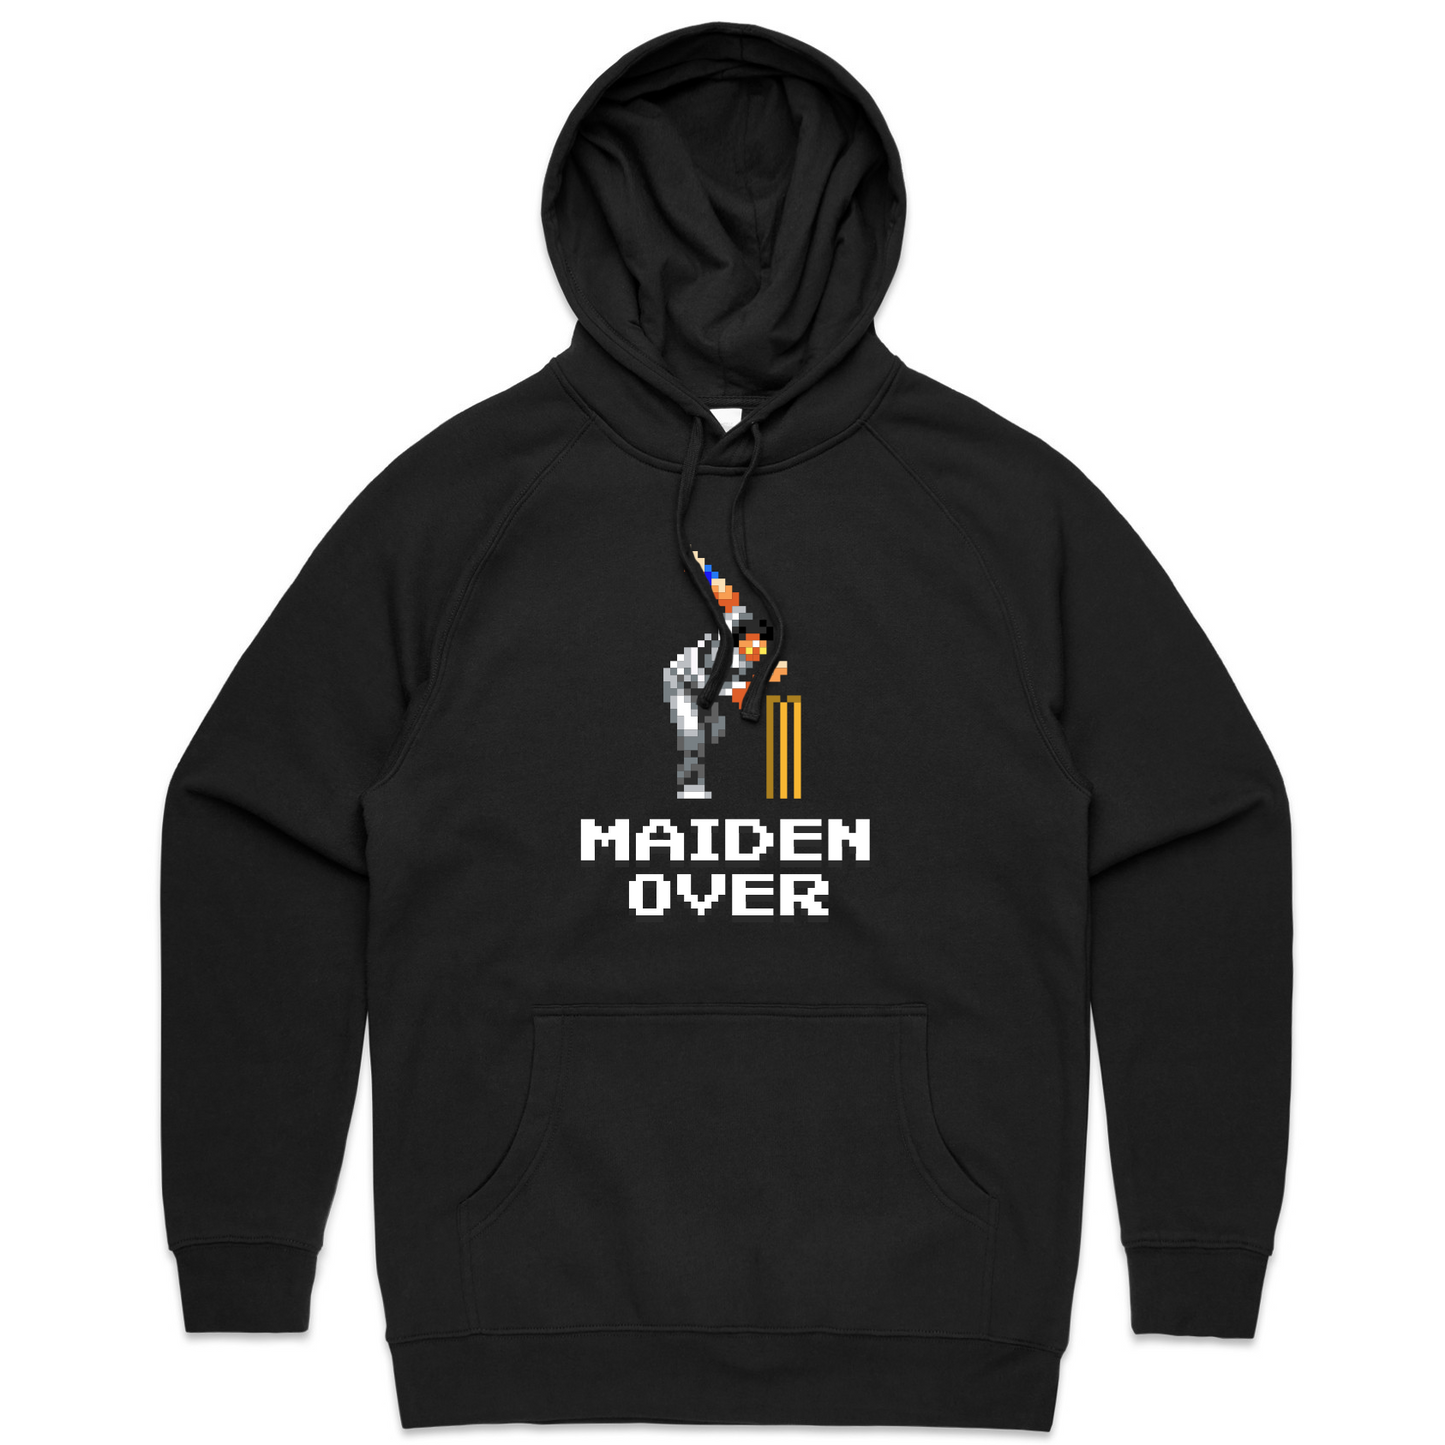 Maiden Over cricket black hoodie